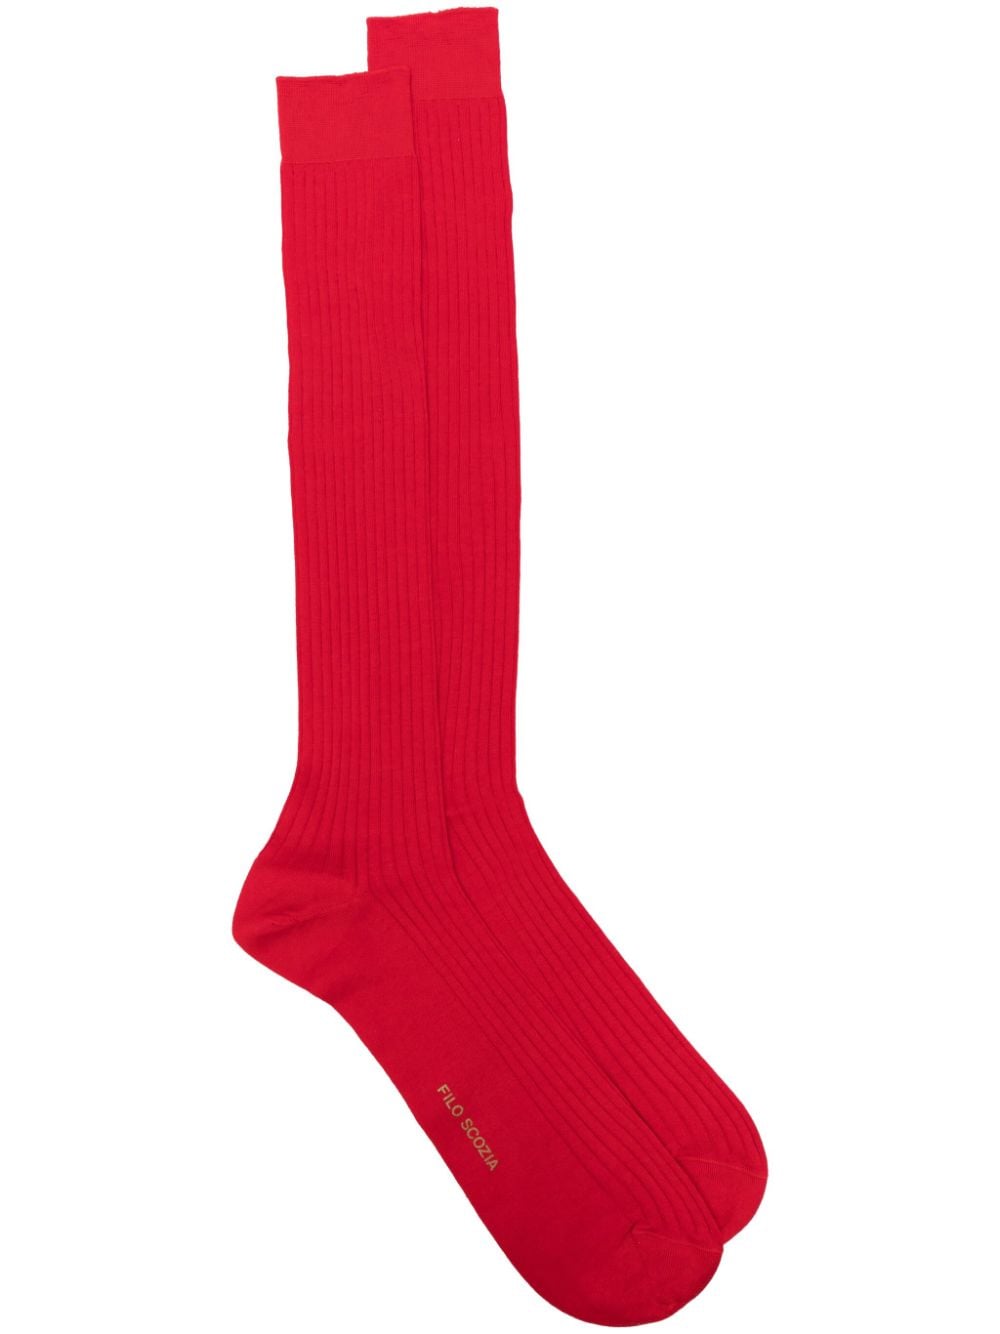 sebago chaussettes montantes à design nervuré - rouge